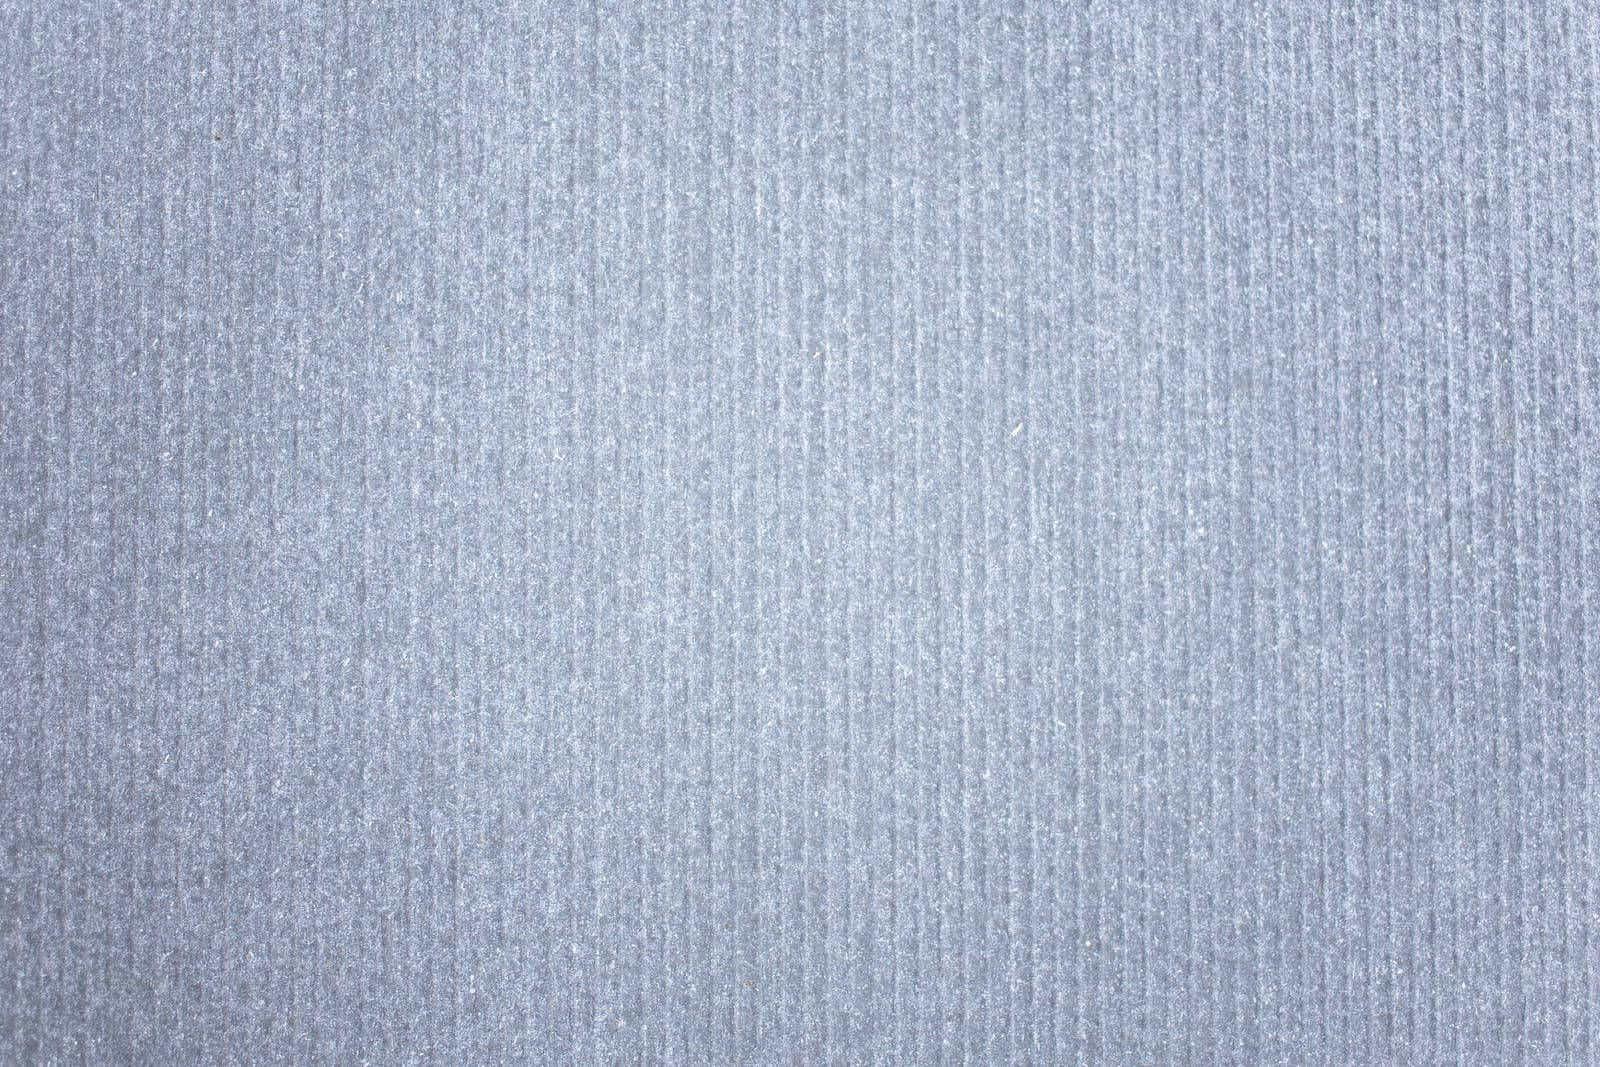 Light Plain Grey Linear Pattern Wallpaper